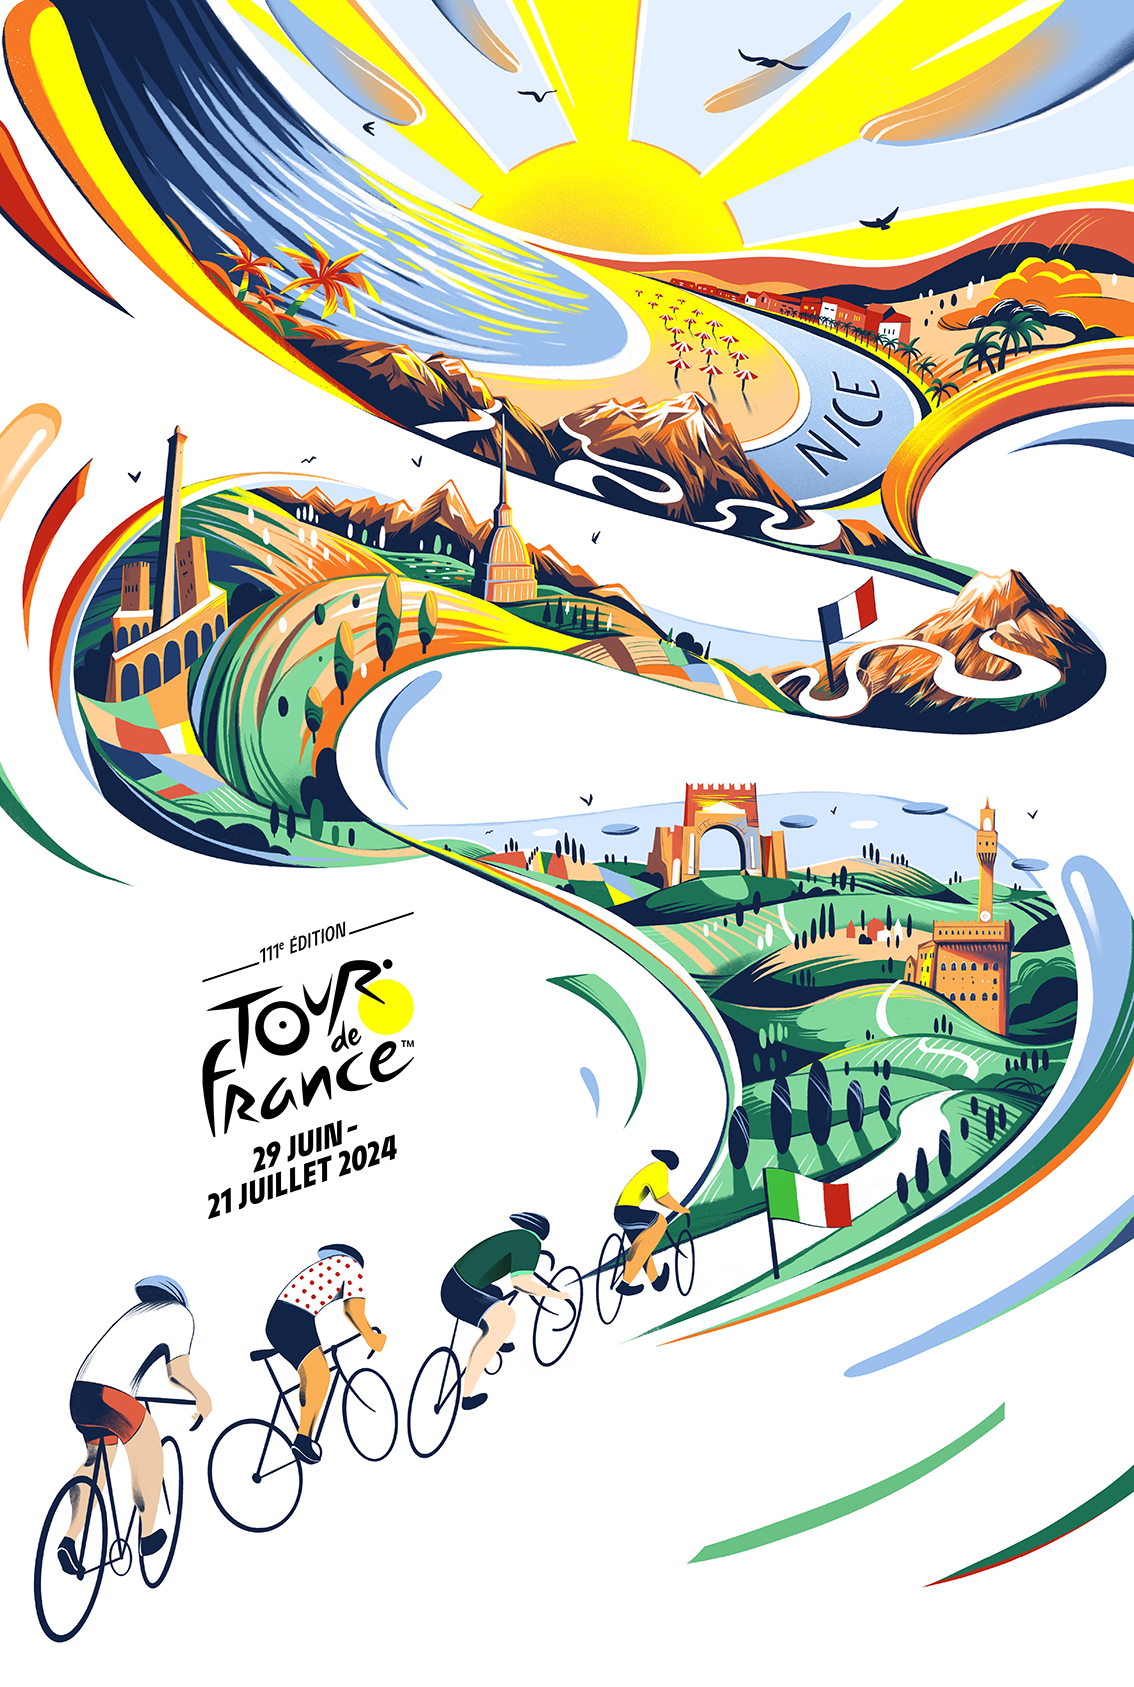 Scopri l'affiche del Tour de France 2024 qui incontrato l'onore di Nice